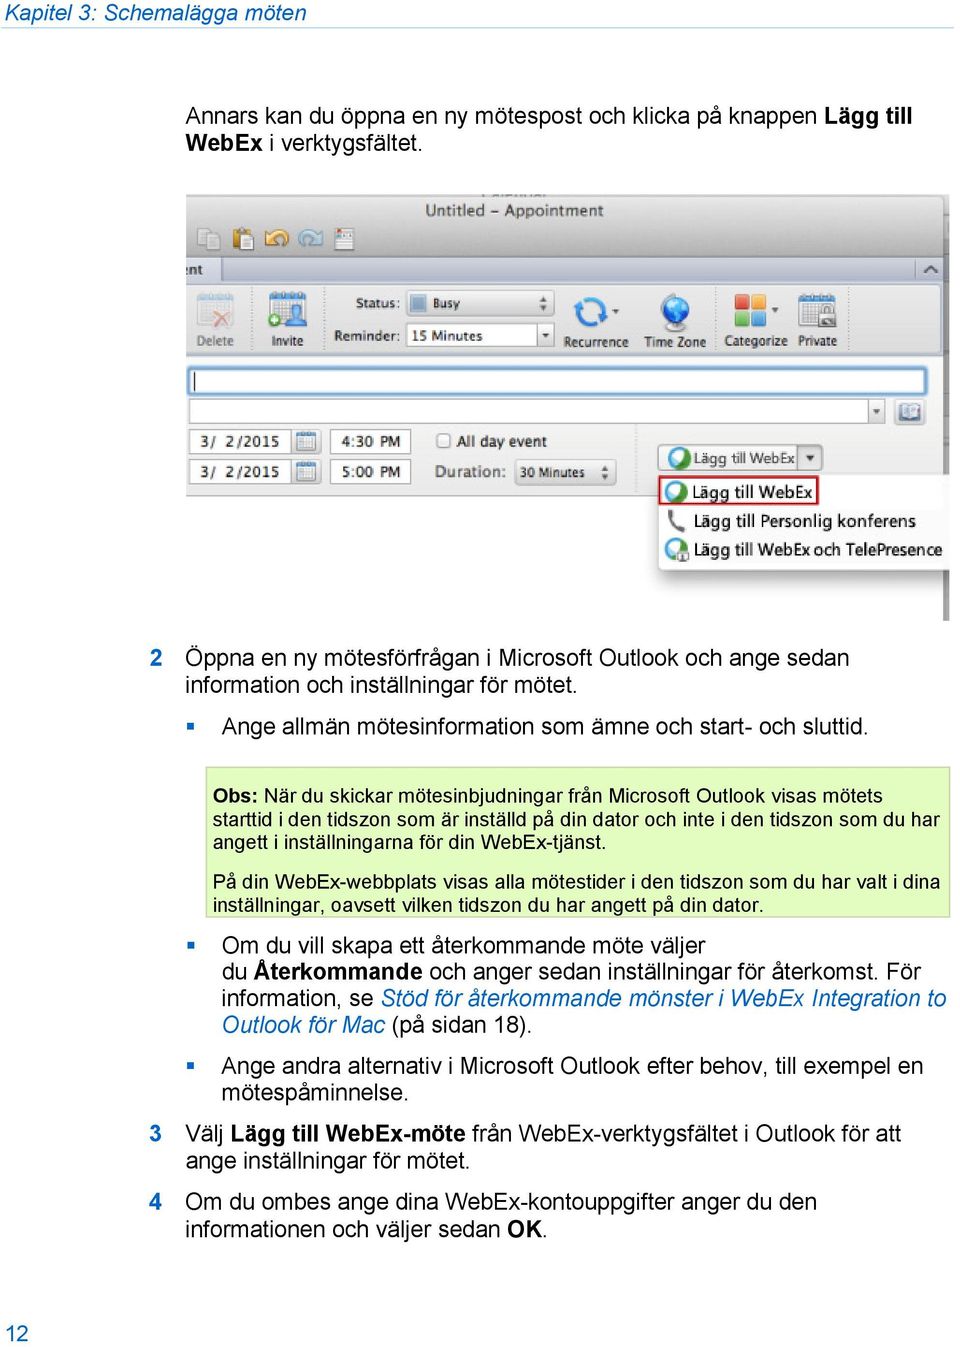 Obs: När du skickar mötesinbjudningar från Microsoft Outlook visas mötets starttid i den tidszon som är inställd på din dator och inte i den tidszon som du har angett i inställningarna för din